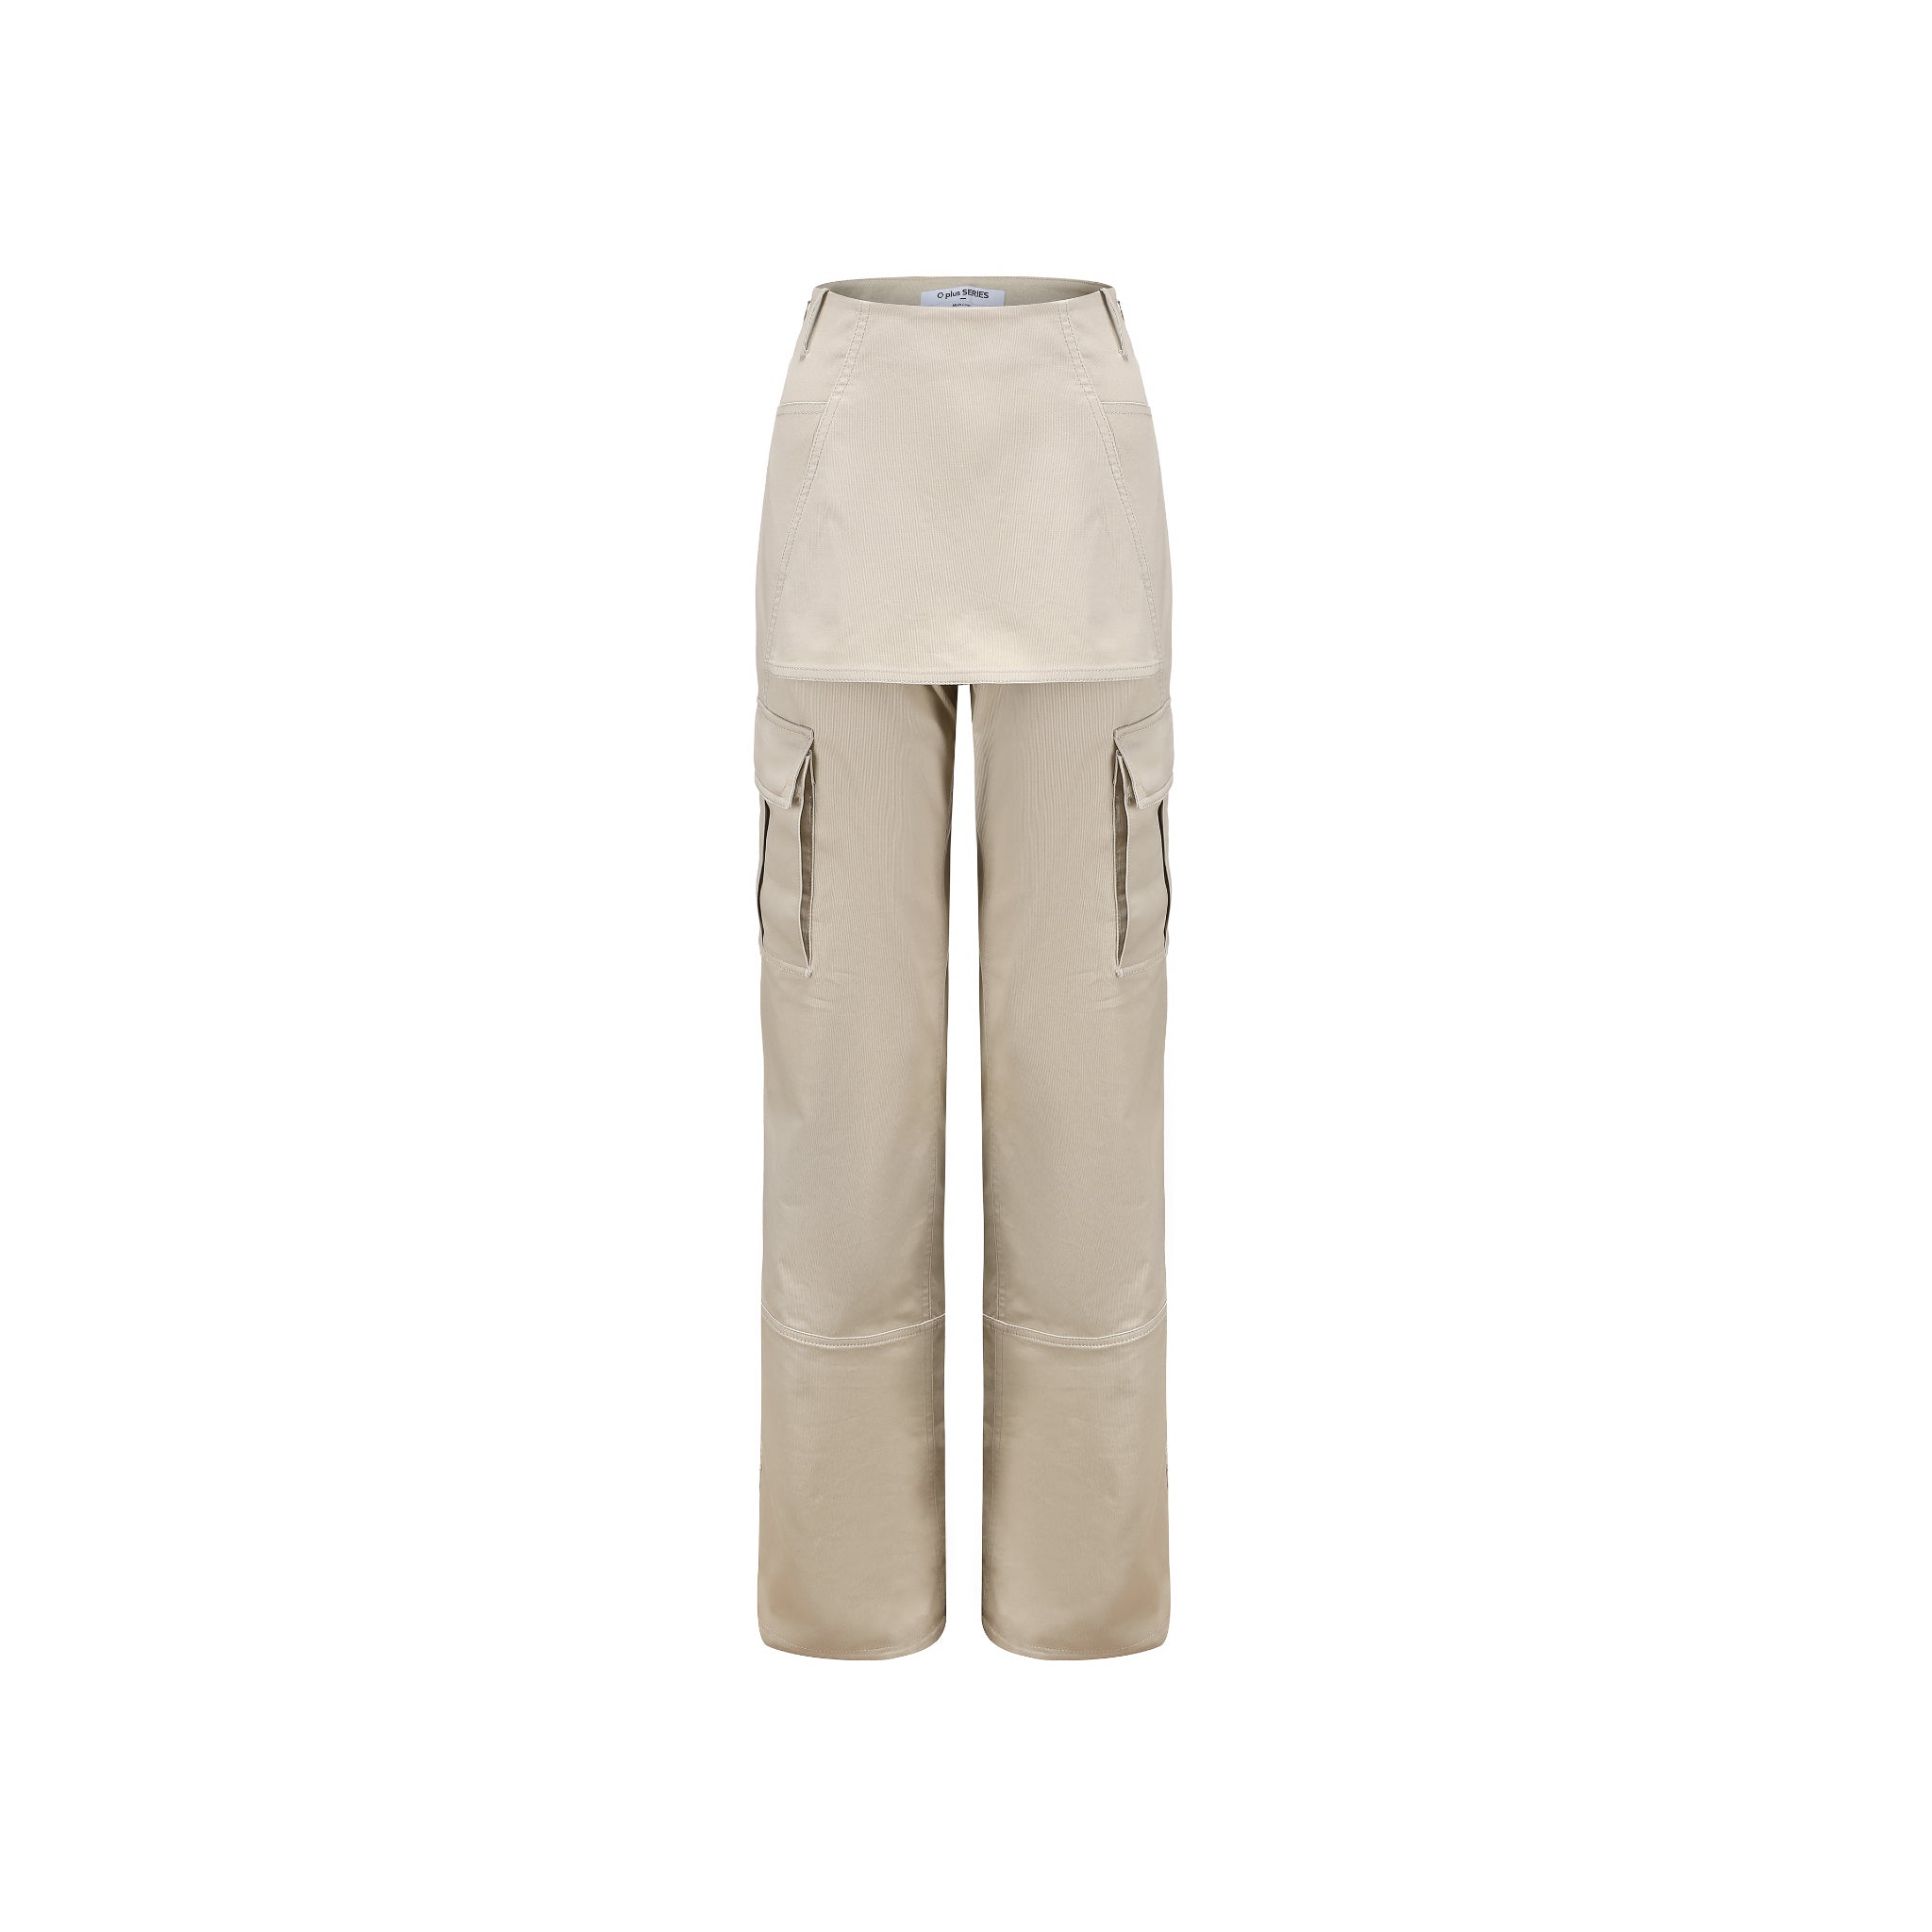 CPLUS SERIES Cplus Series Cream Cargo Skirt Pants & MADA IN CHINA